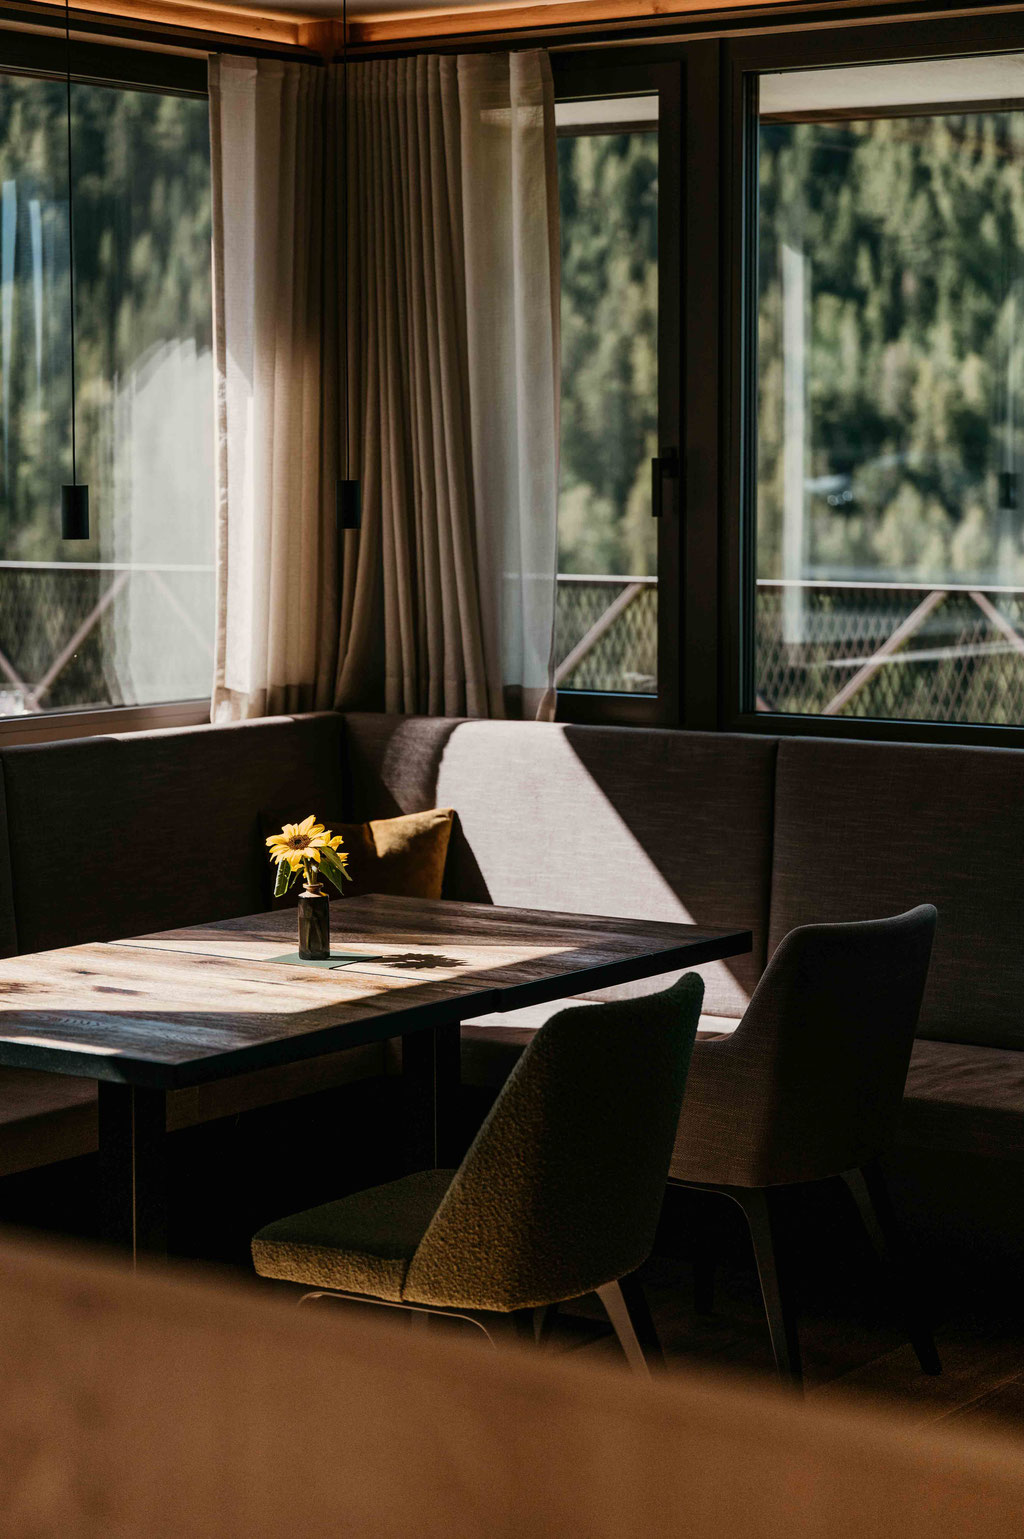 MY DAUM, Aparthotel - Boutiquehotel - Bed&Breakfast - Deutschnofen-Dolomiten, Südtirol ... Member of Mountain Hideaways - die schönsten Hotels in den Alpen ©Marika Unterladstätter